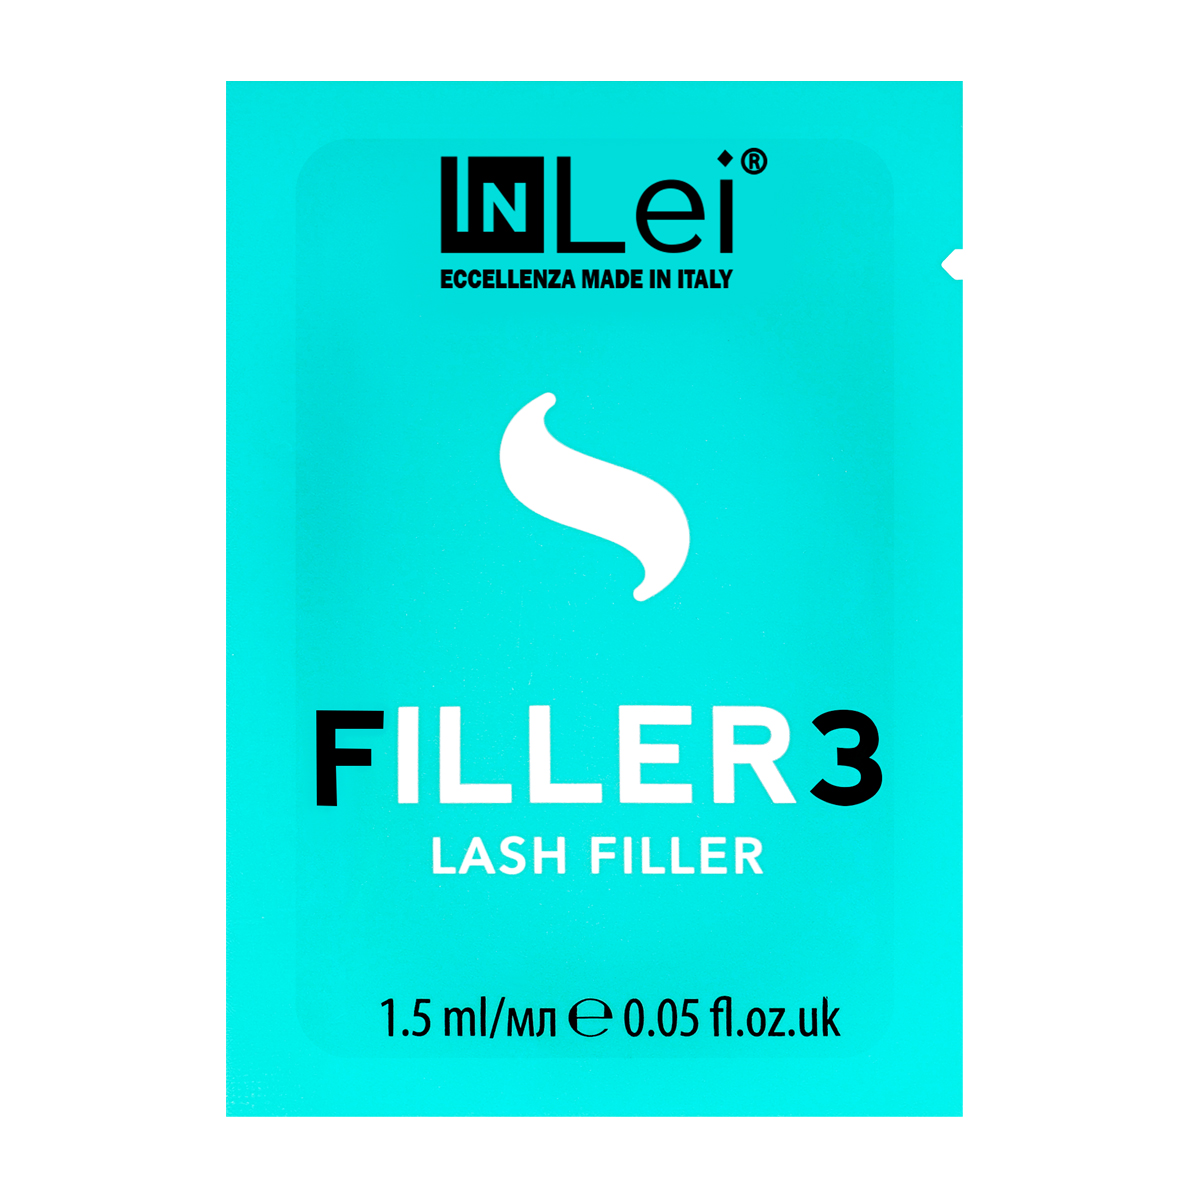 Филлер для ресниц InLei "Filer 3" (1,5 мл)